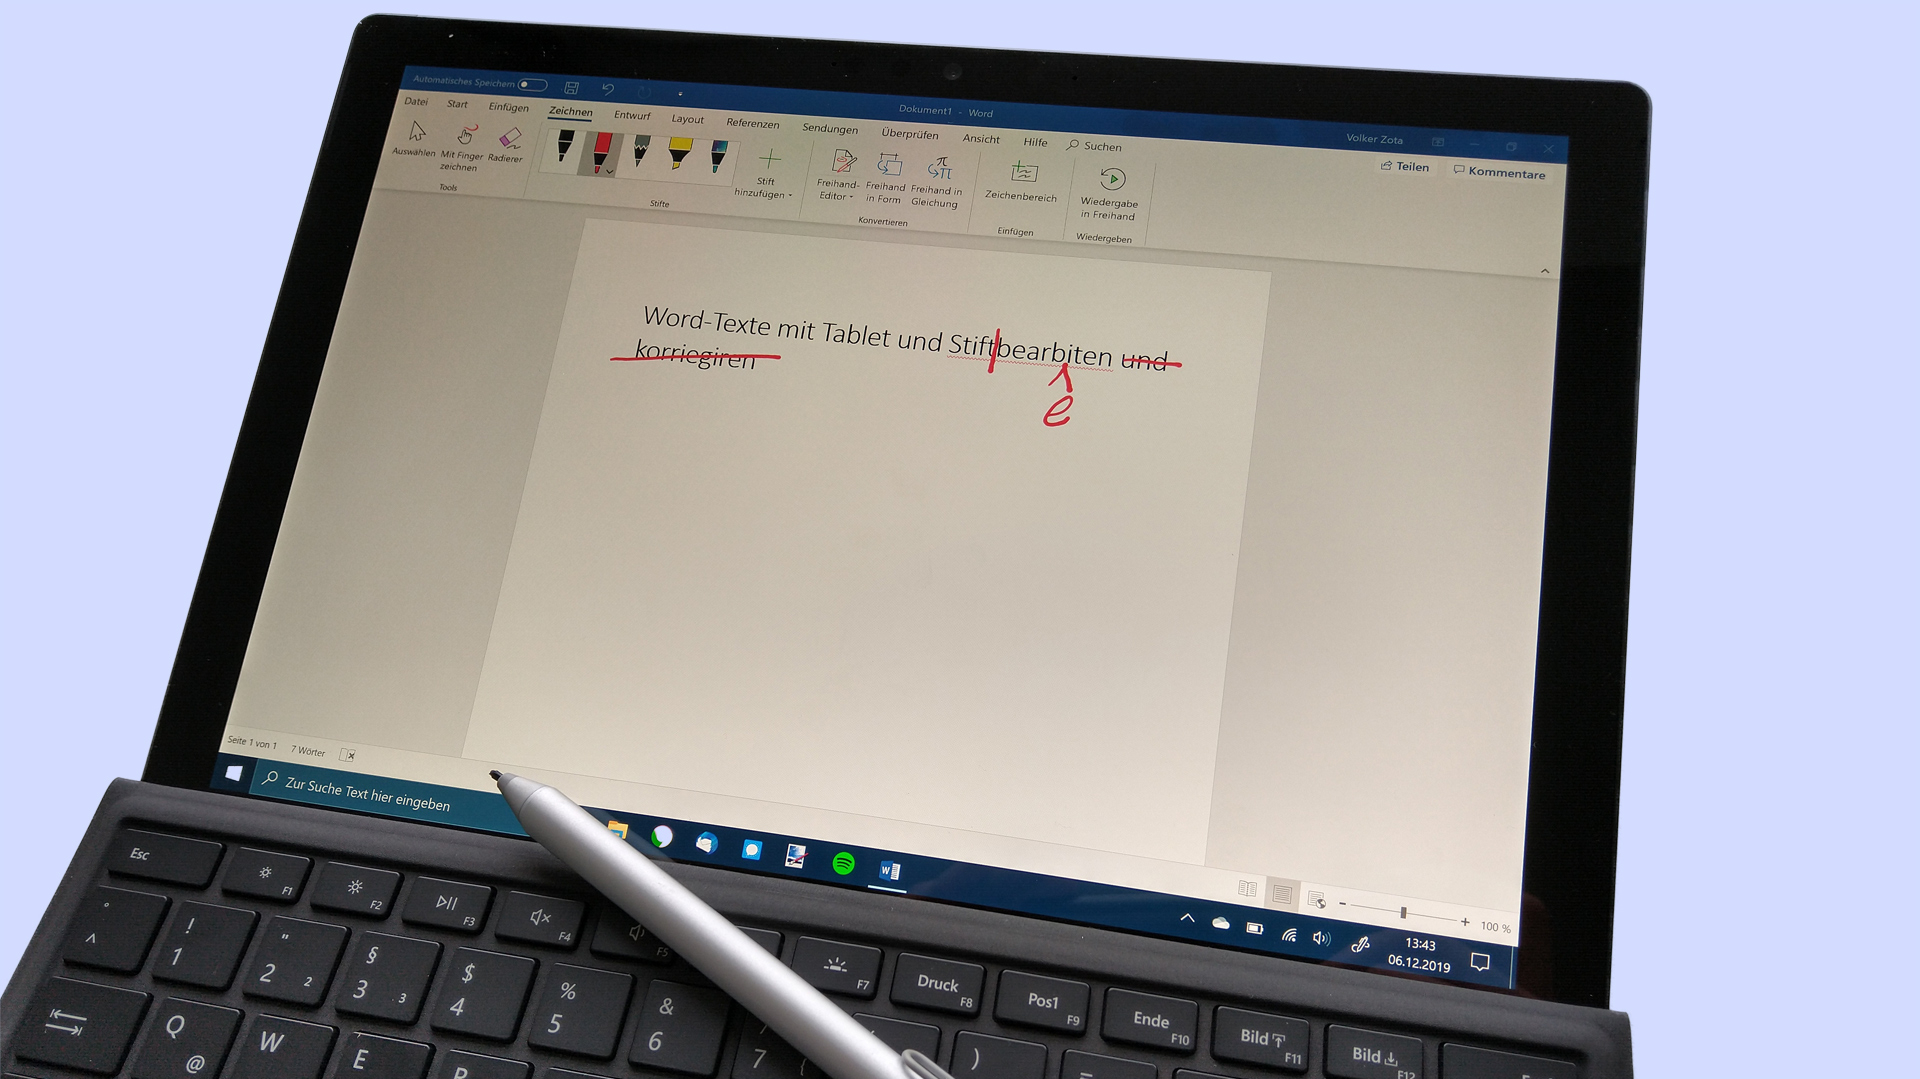 Word-Texte mit Tablet und Stift bearbeiten | heise online